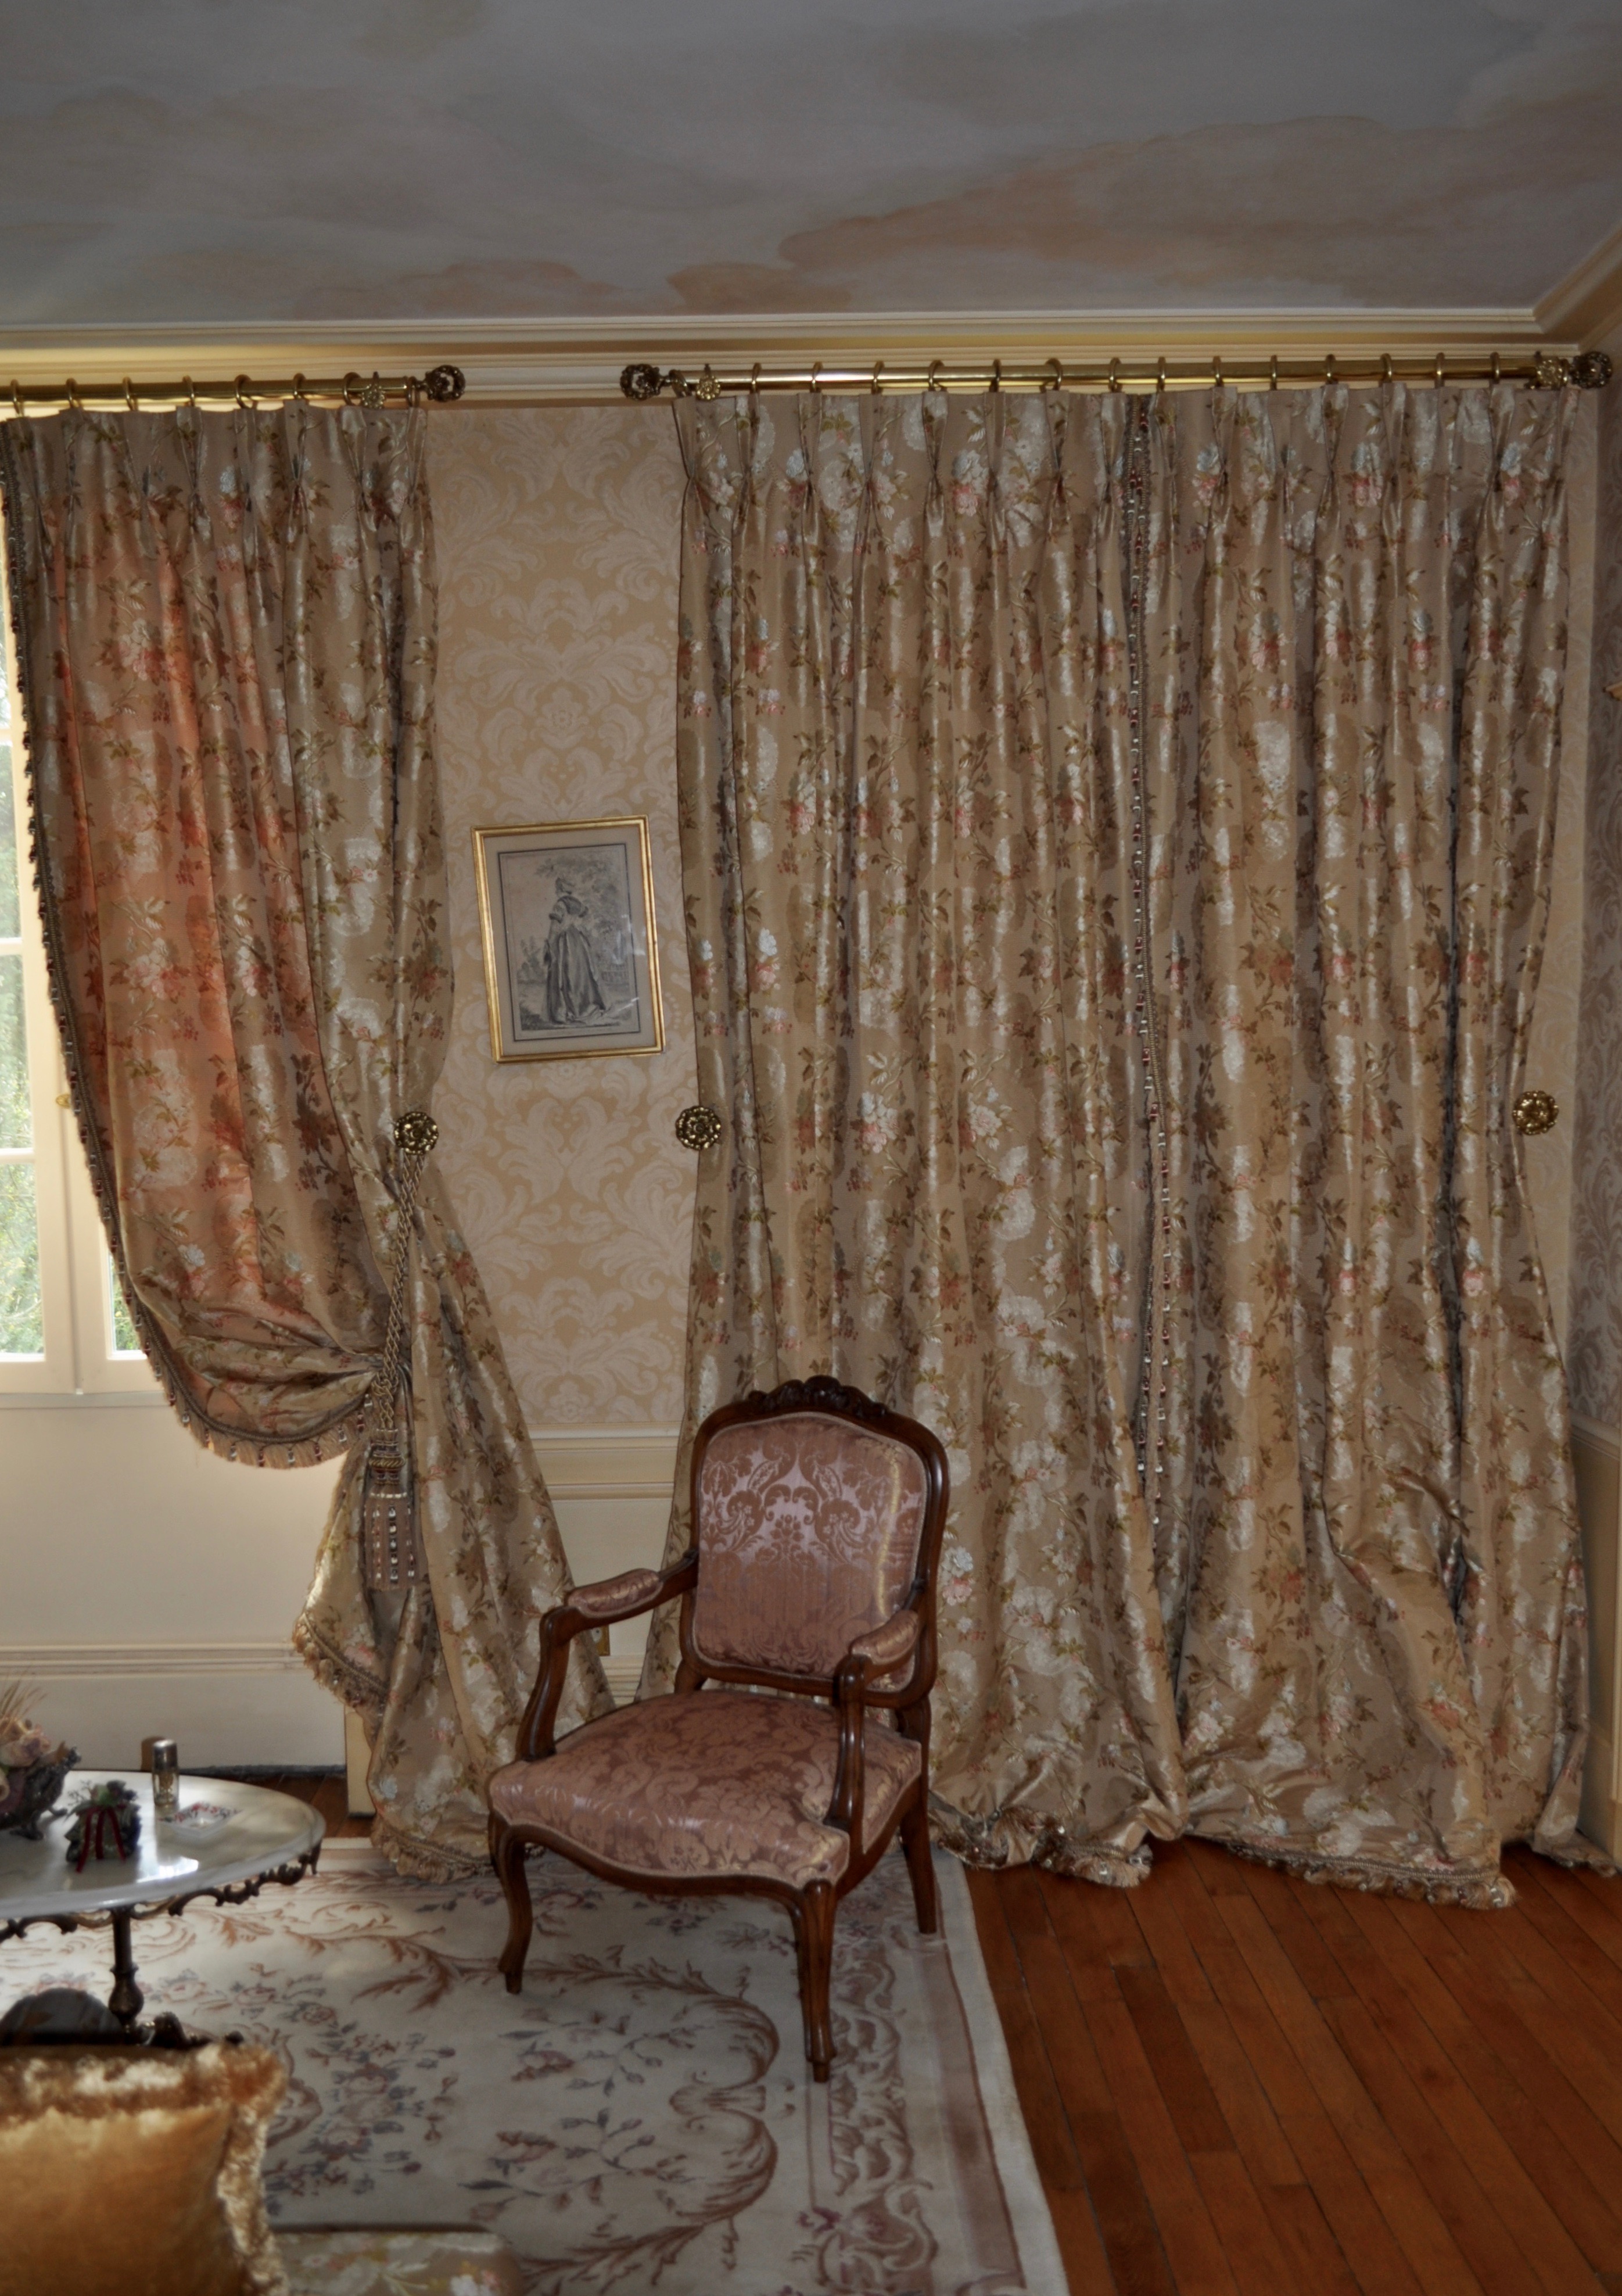 Tapissier décorateur luxe Paris, refaire fauteuil, confection rideau de soie sur mesure